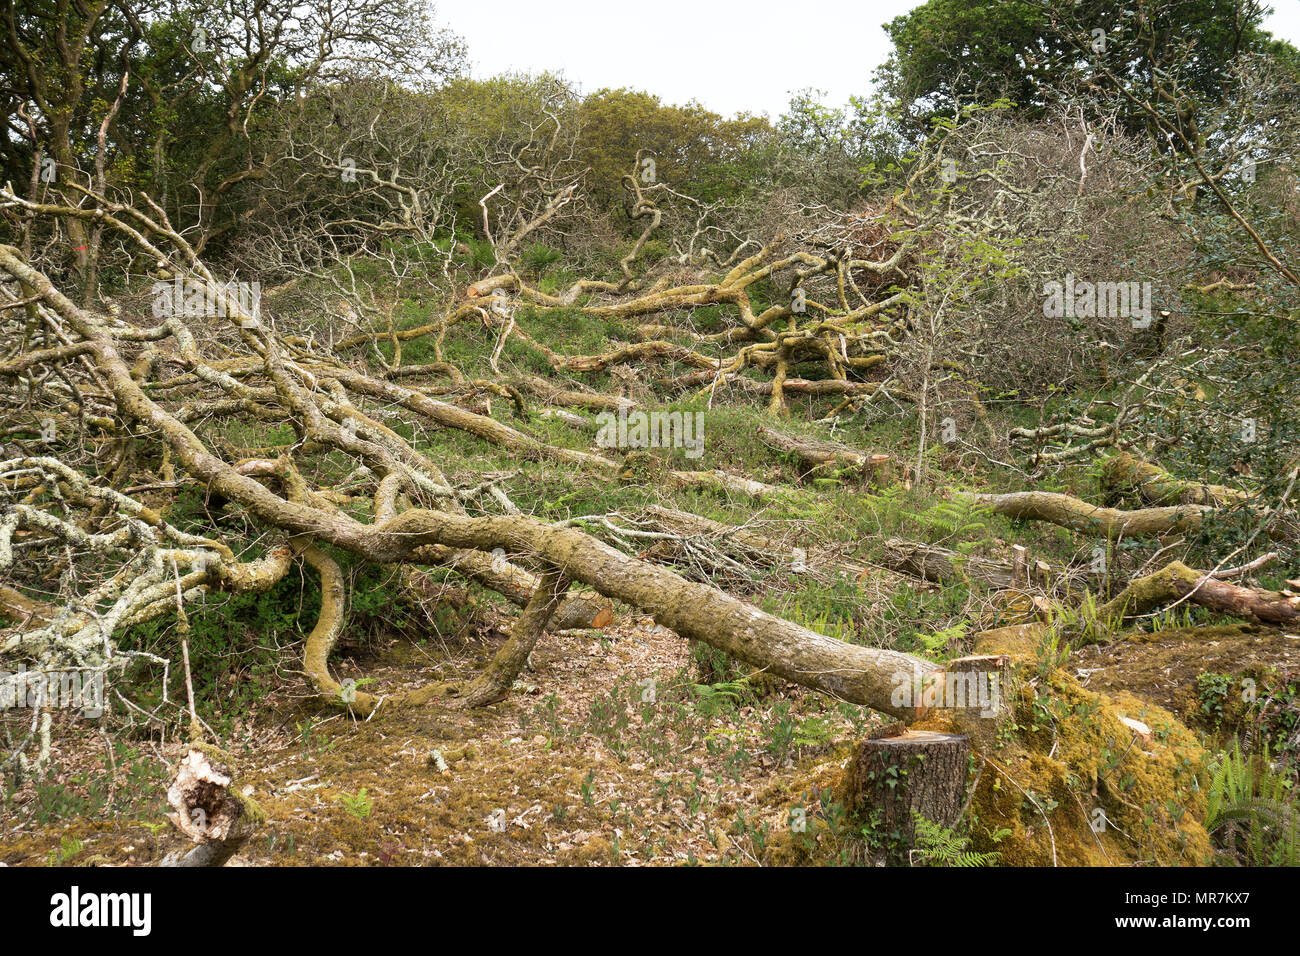 Jeu de forêts anciennes, l'abattage des taillis à unity woods, Cornwall, Angleterre, Grande-Bretagne, Royaume-Uni. Banque D'Images